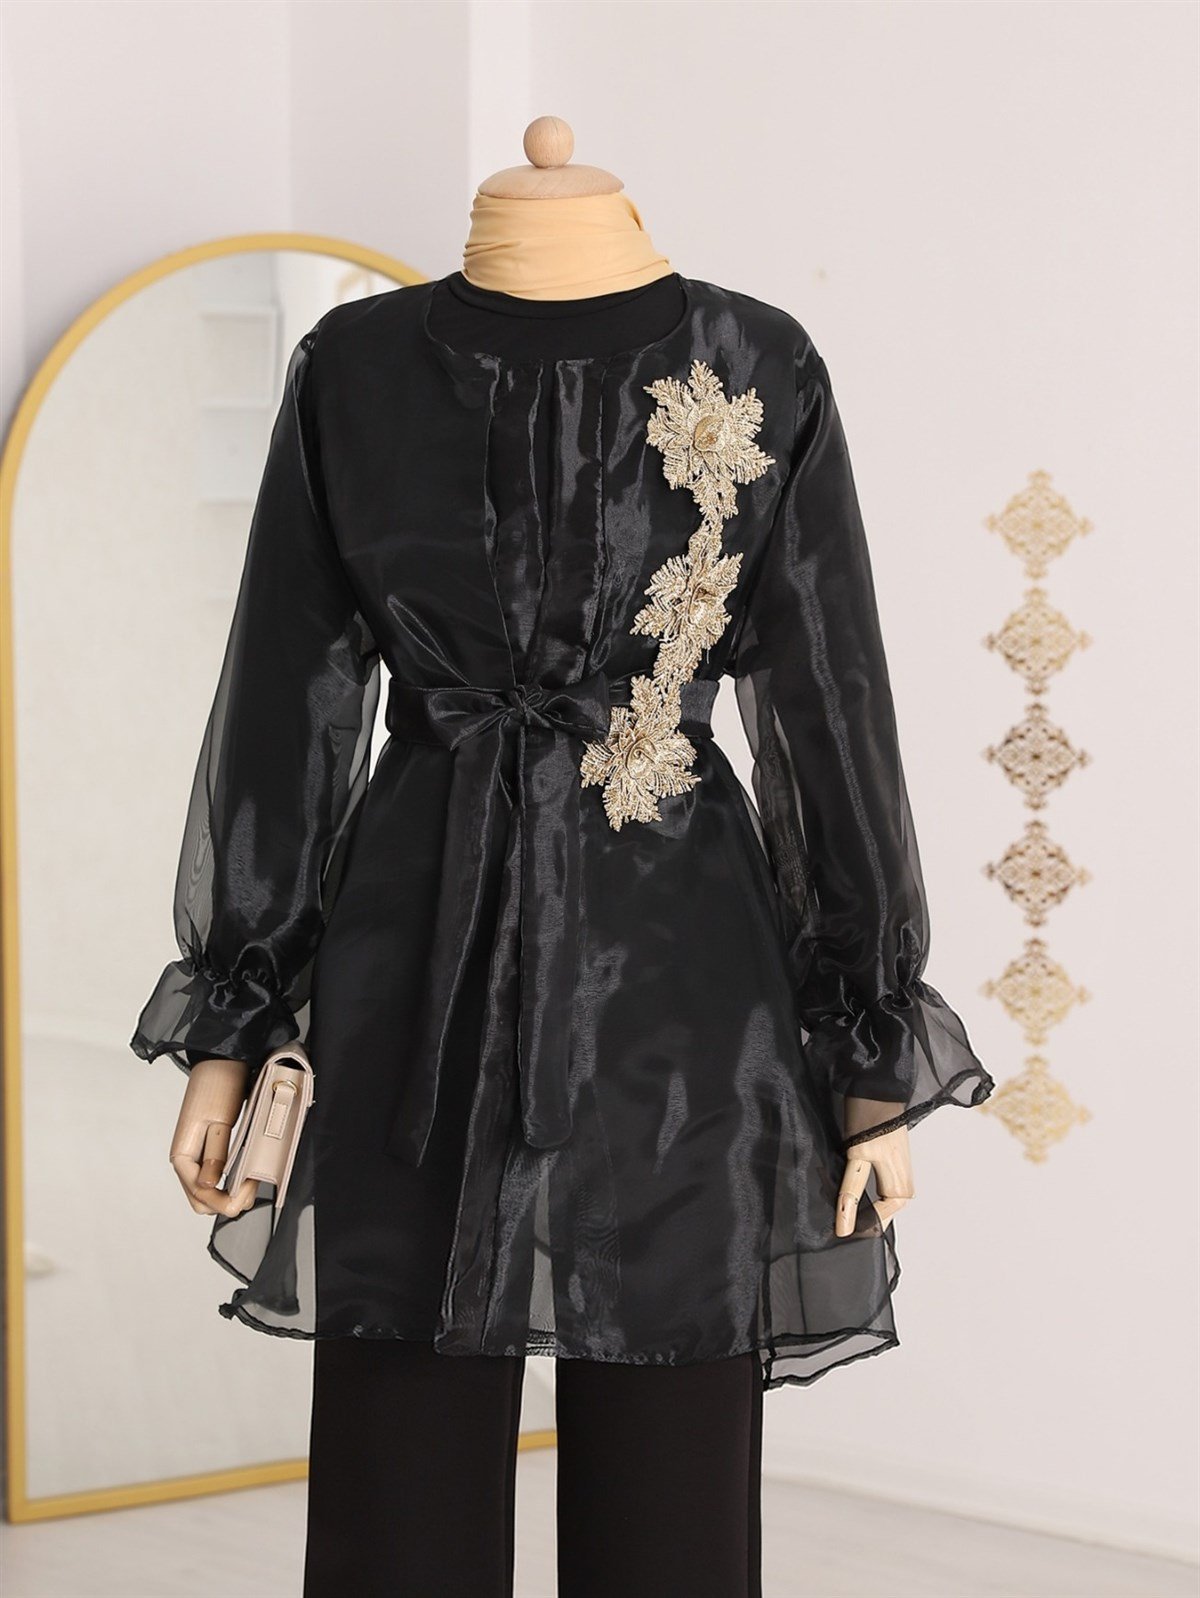 İkili Organze Tül Tunik -Siyah - 118-3001-R01 | ZAMANE Marka Ceket  Modelleri | Kadın Tesettür Giyim - KaliteMall.com